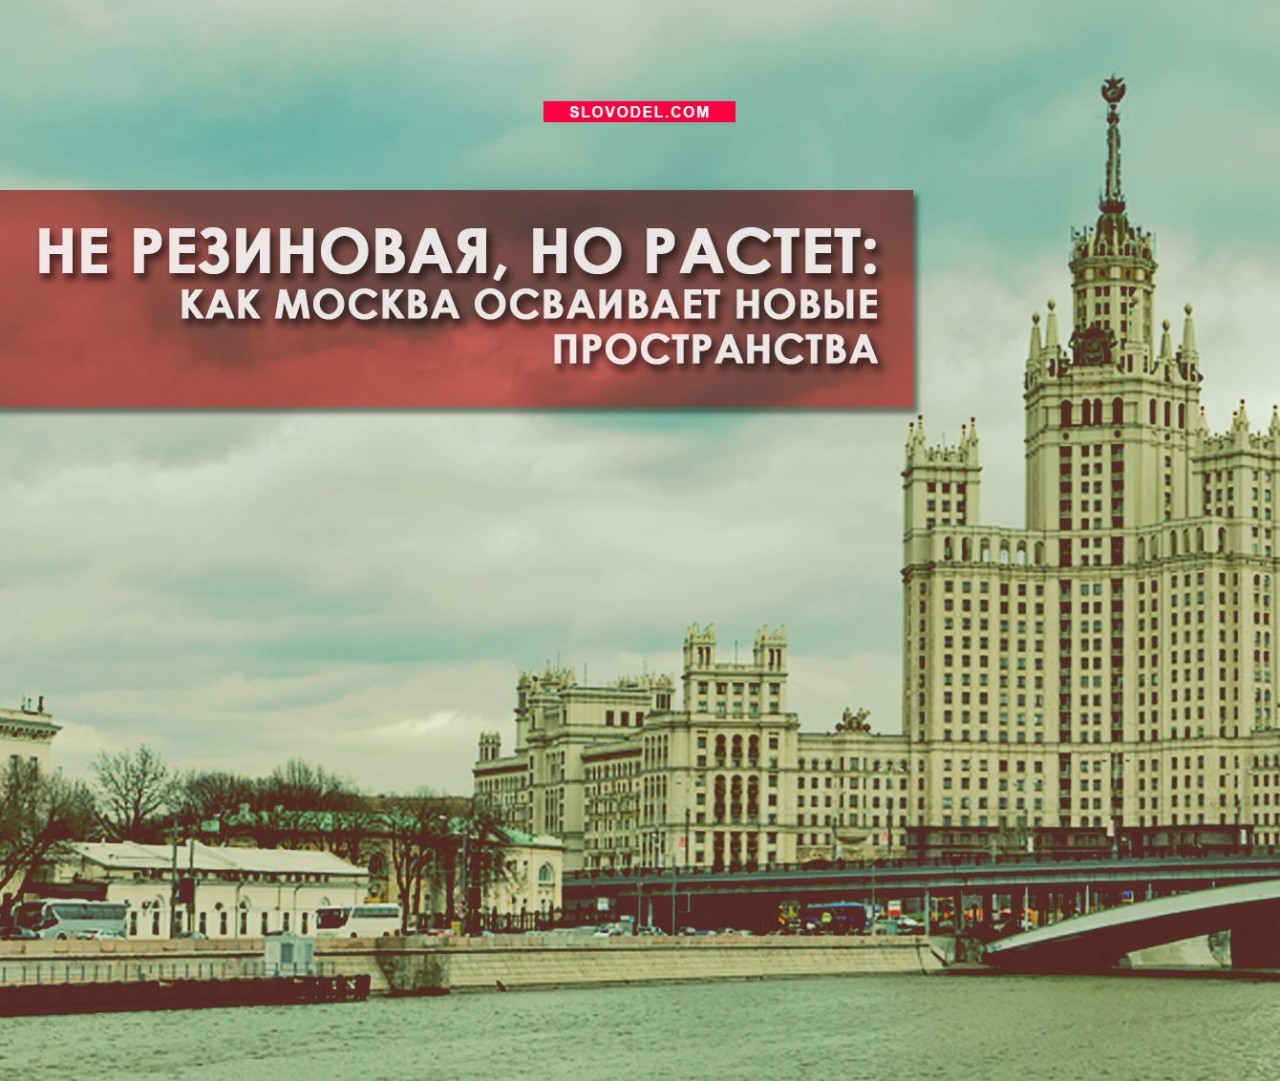 Не резиновая, но растет: как Москва осваивает новые пространства